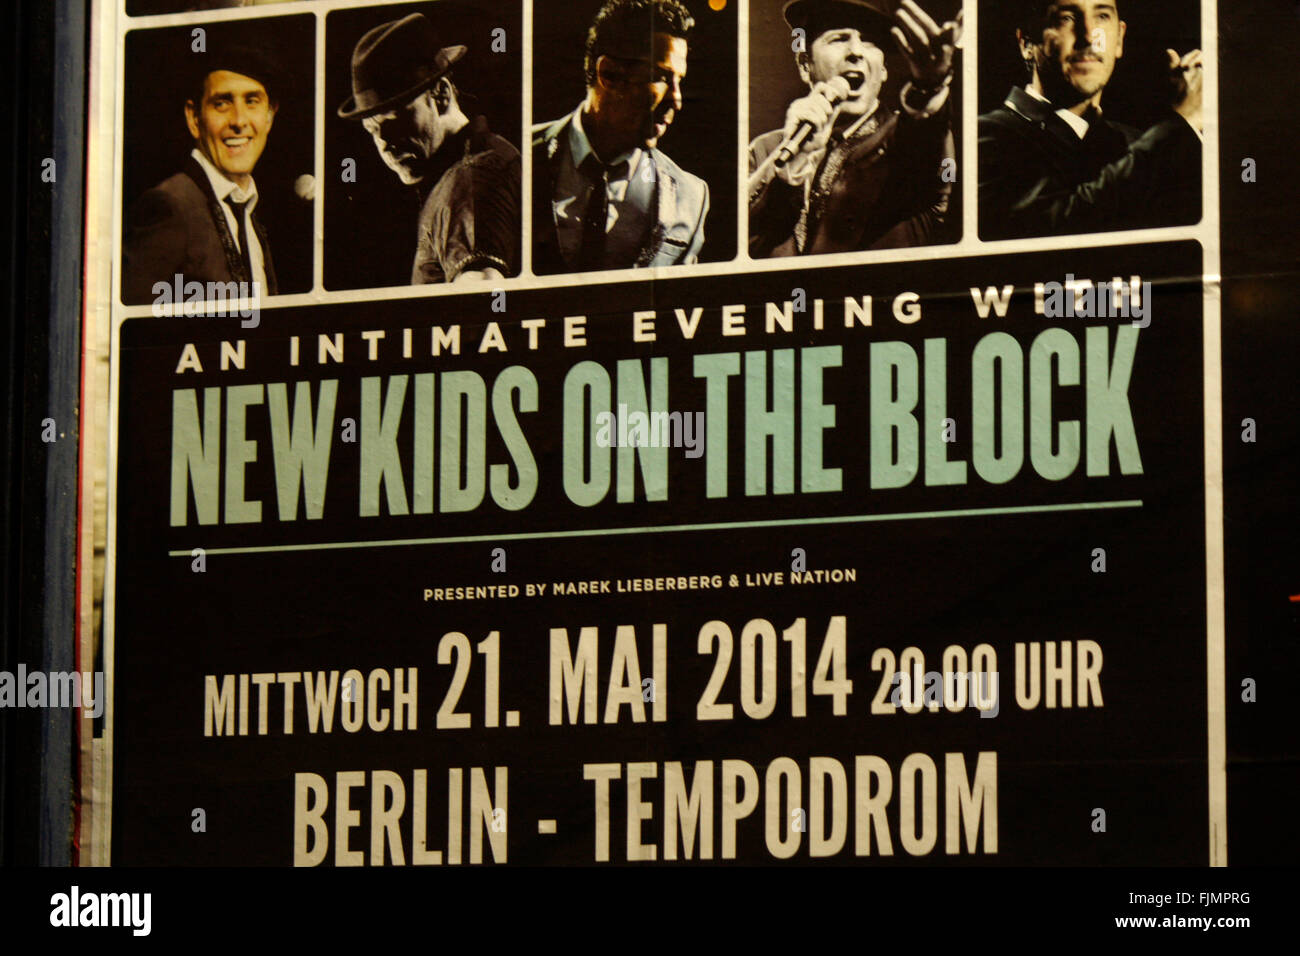 Vorankuendigung fuer ein Konzert der Band 'New Kids on the Block', Berlin. Stock Photo